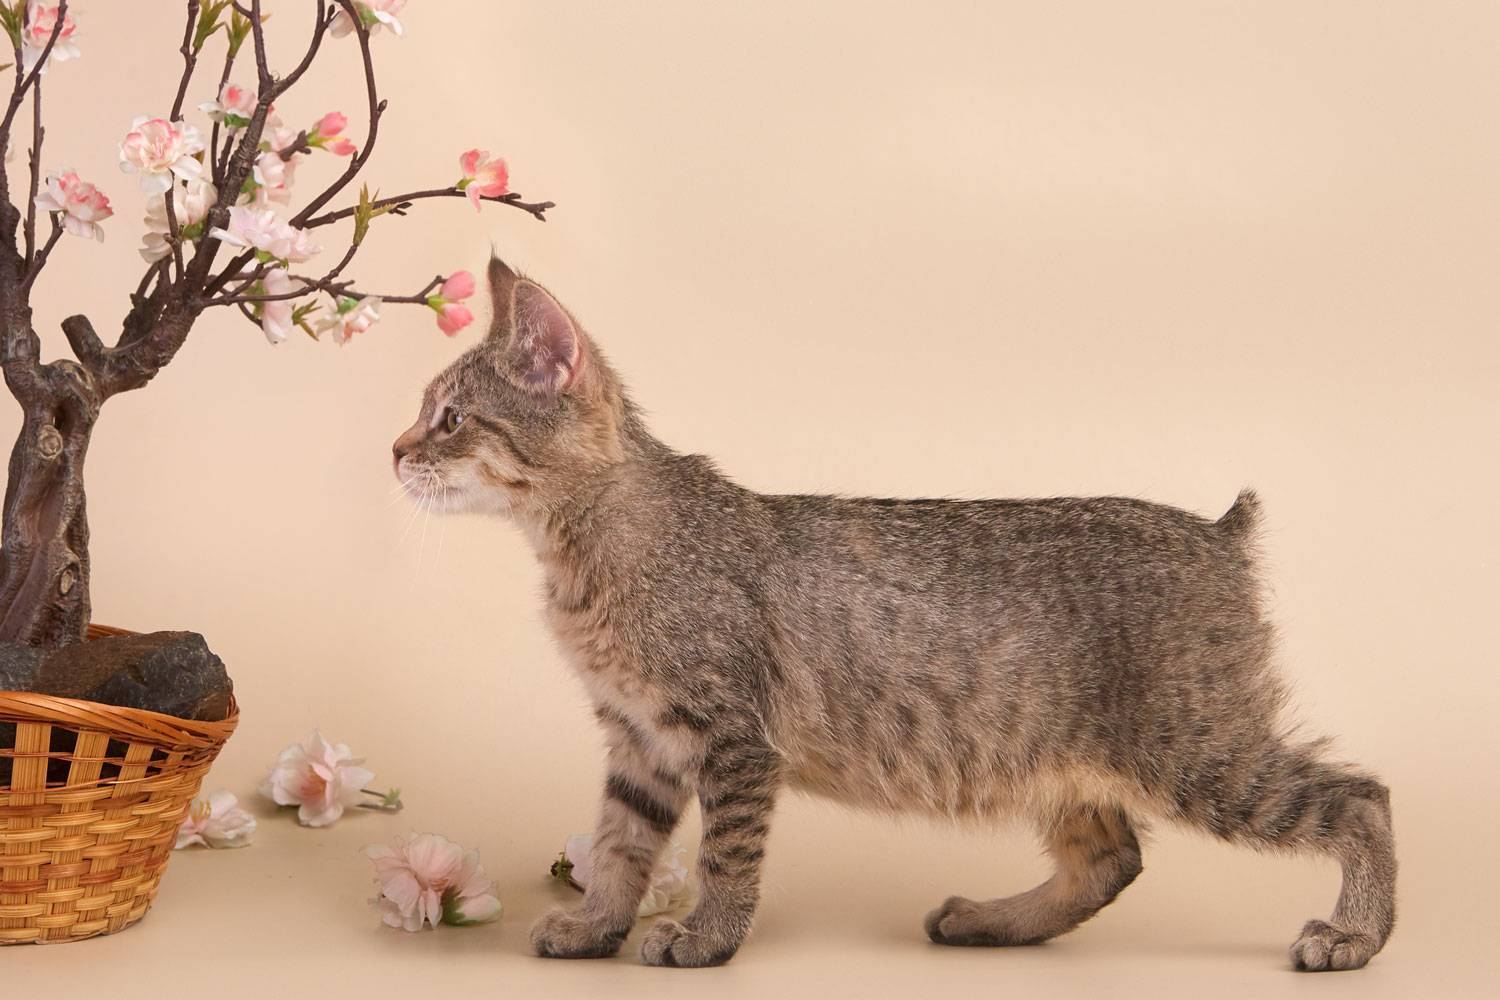 Пиксибоб кошка. описание, особенности, характер, история, уход и цена породы